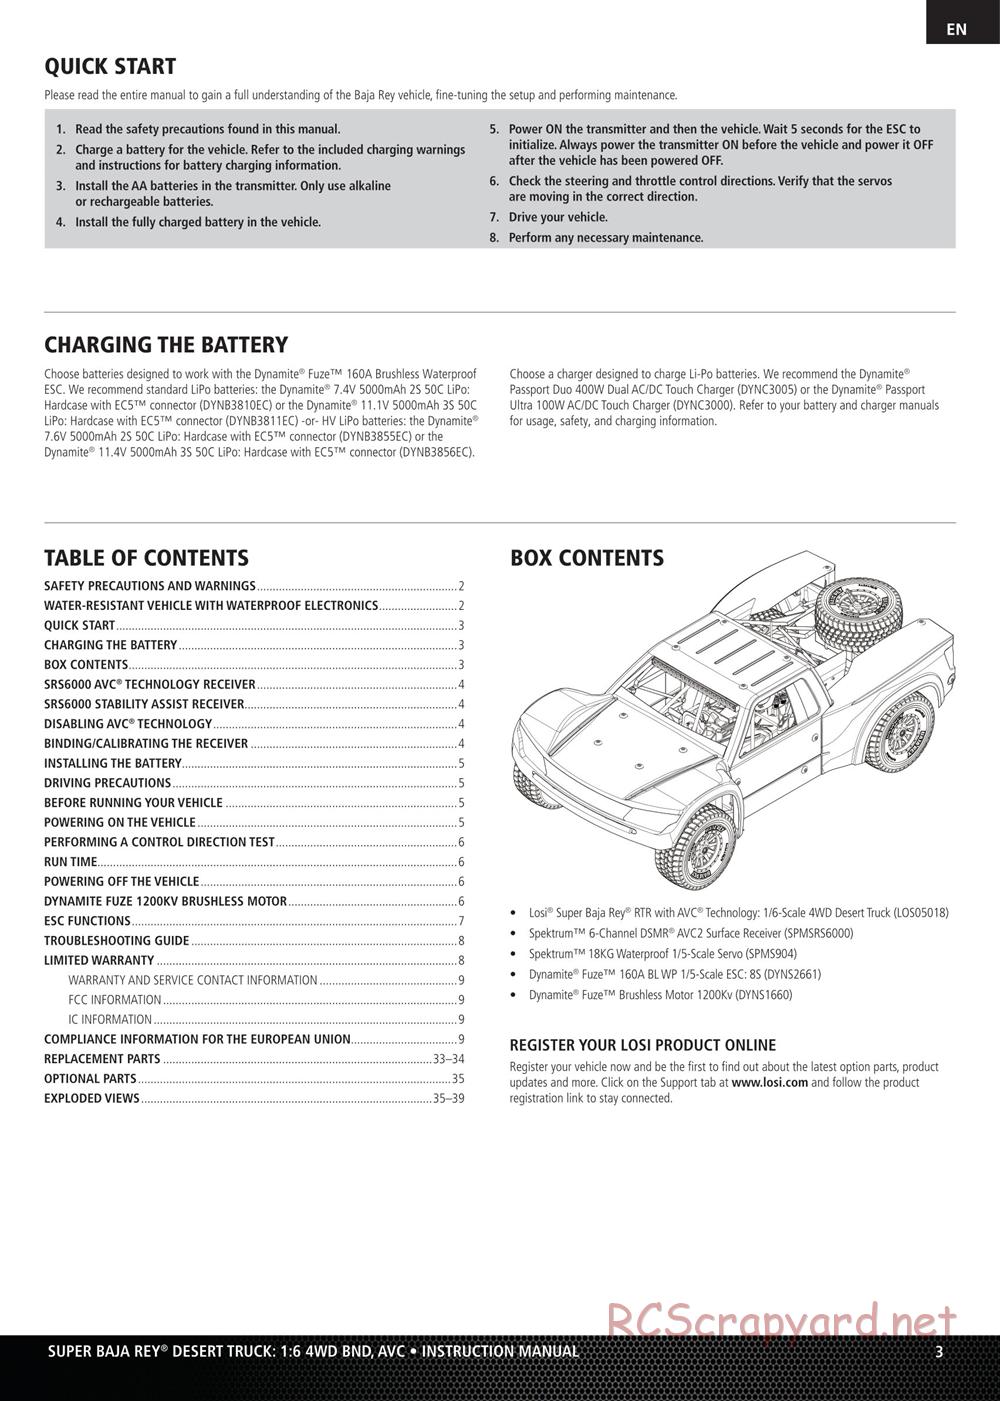 Team Losi - Super Rock Rey BND - Manual - Page 3